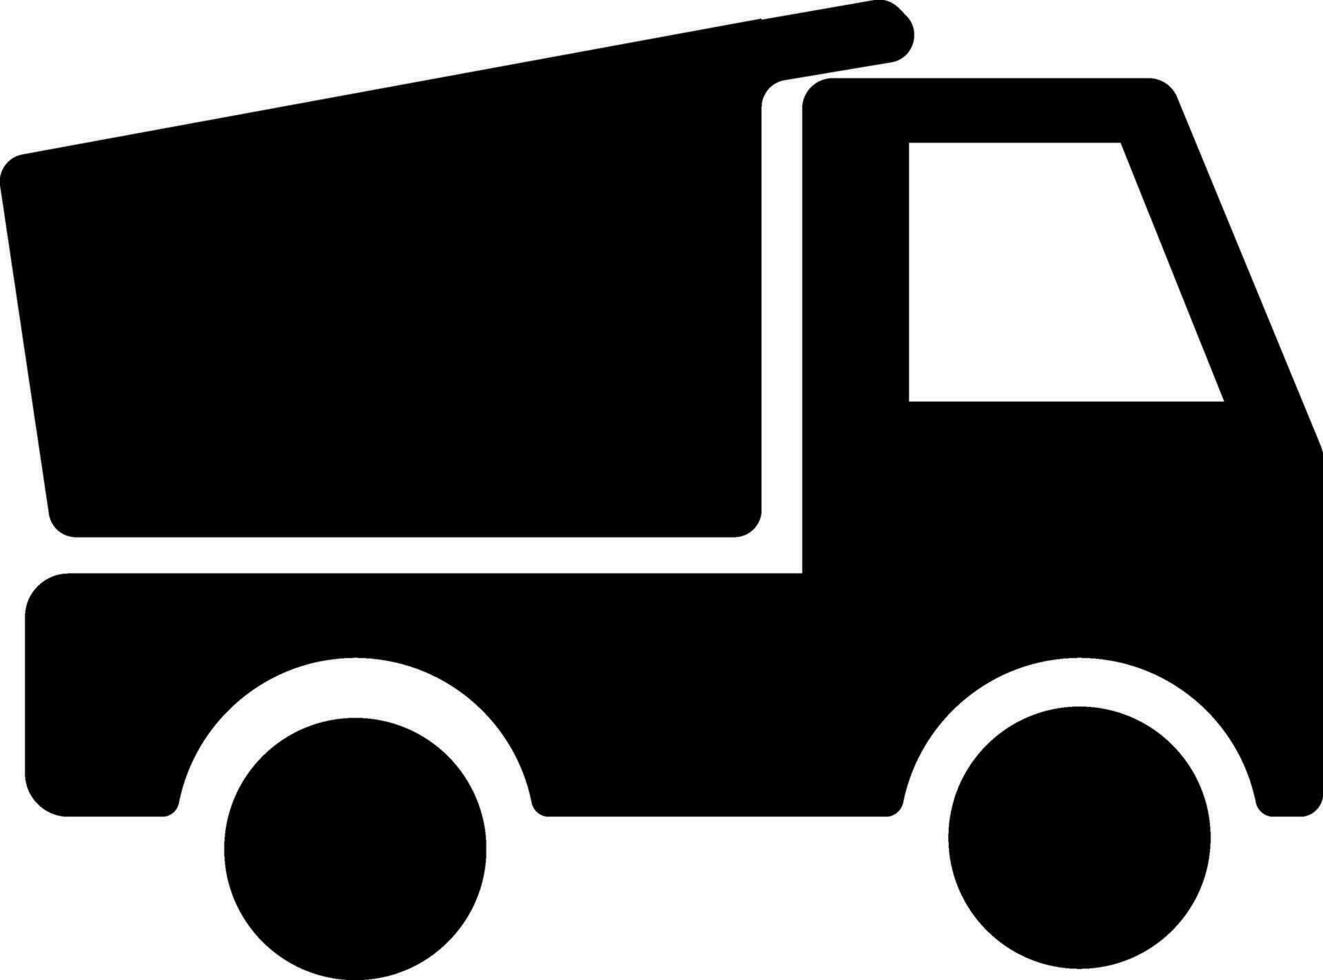 vetor plano placa ou símbolo do uma despejo caminhão.